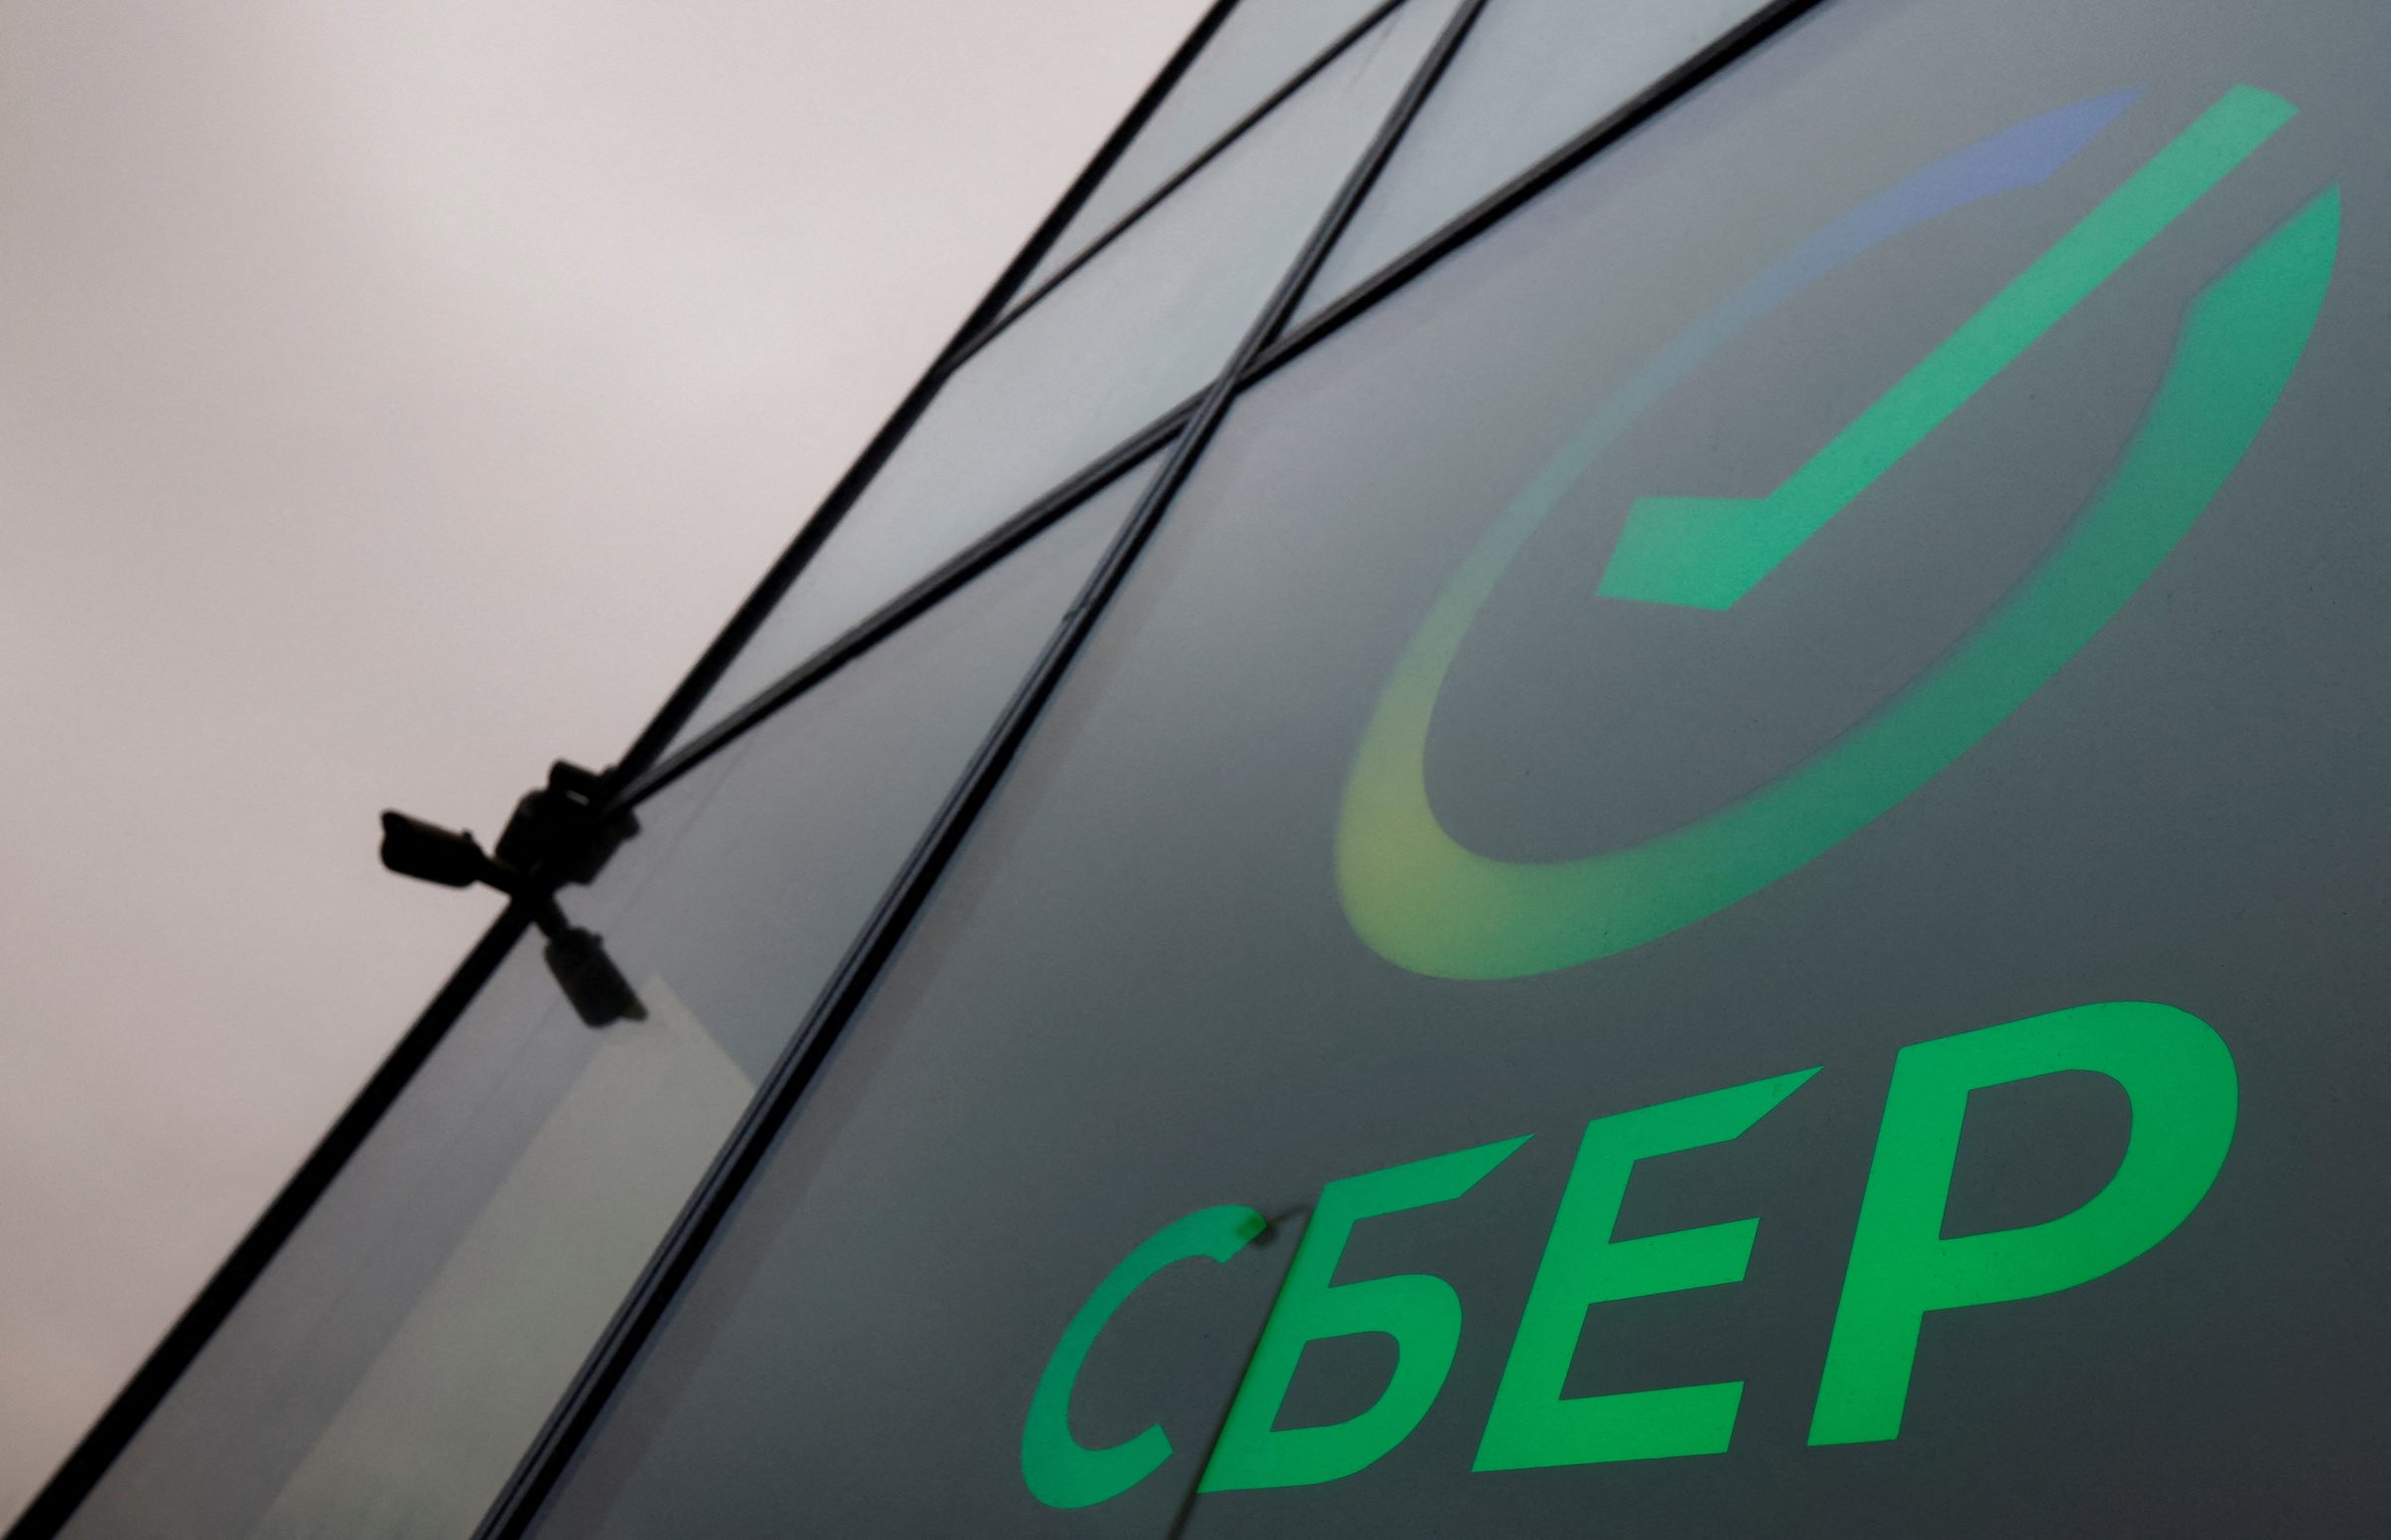 Laut dem CEO ist Russlands größte Bank, die Sberbank, auf dem Weg in die Gewinnzone